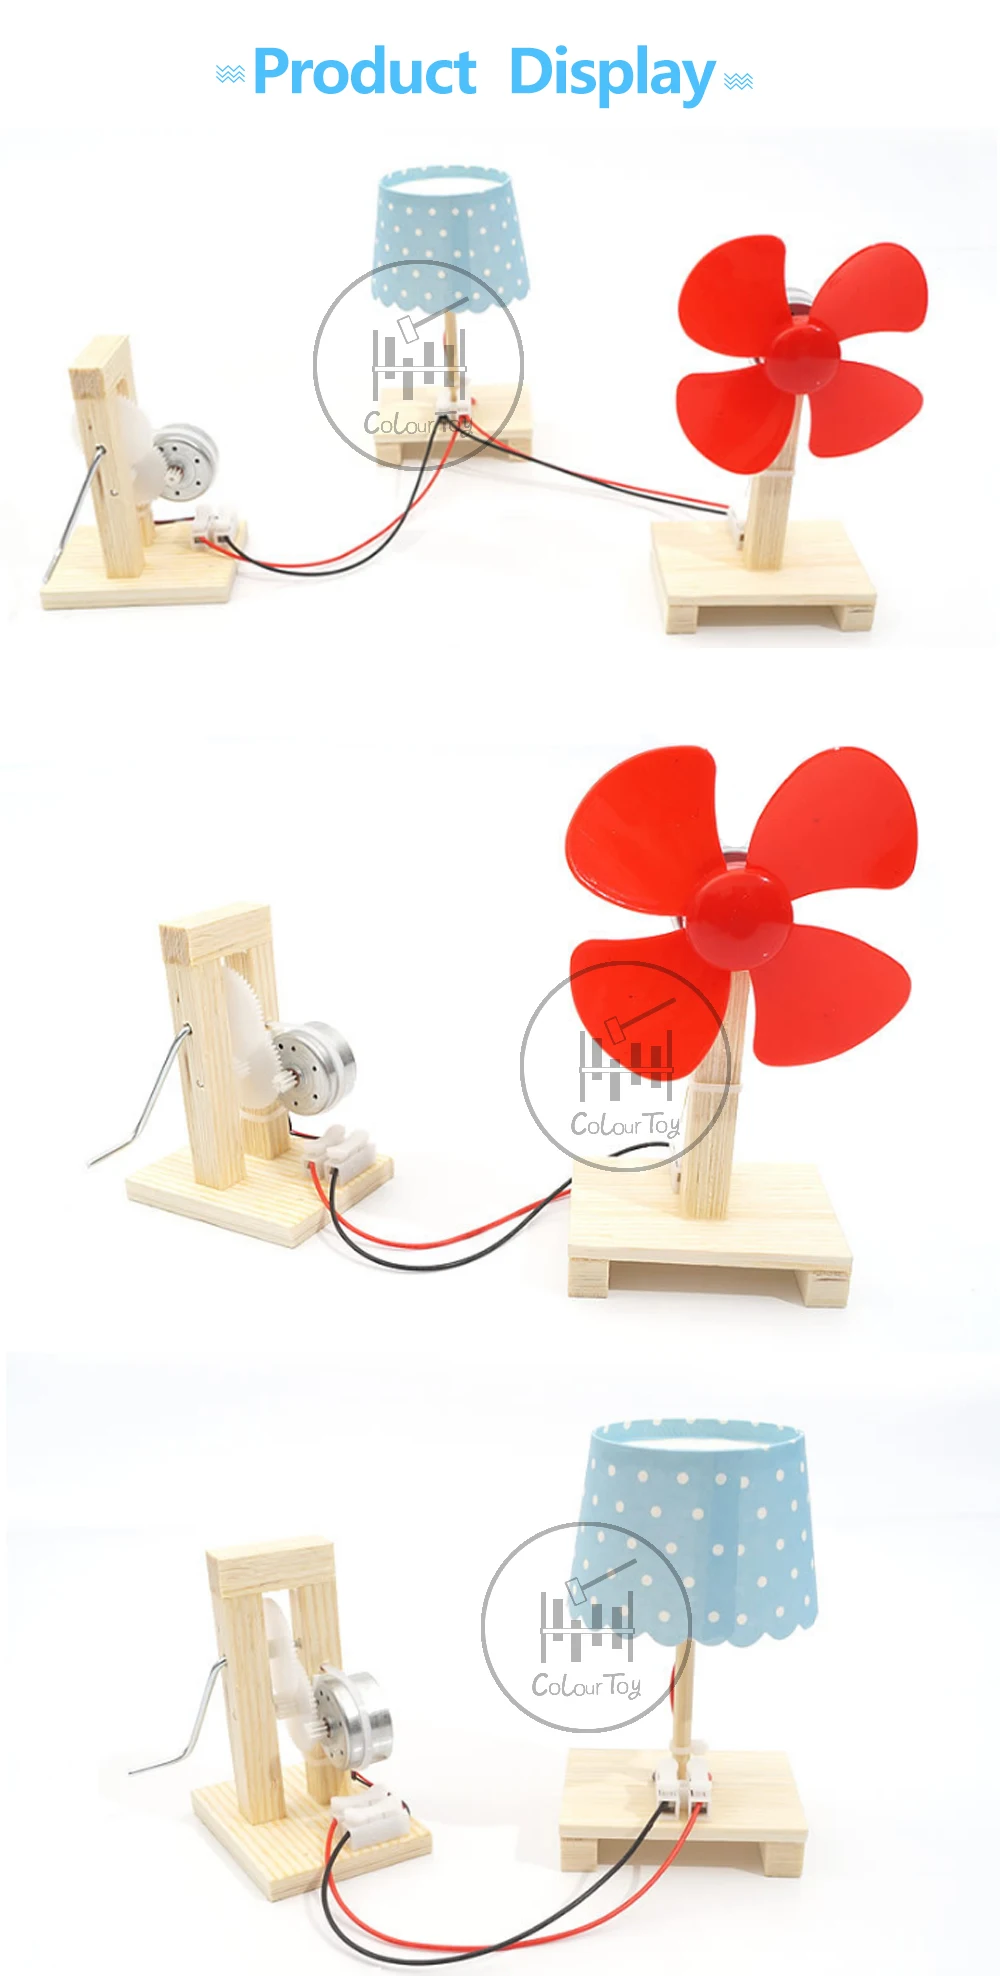 Шток мотор умный ручной коленчатый электрогенераторы маленькая лампа DIY робот-Паззл набор игрушек для 5+ детей подарки на день рождения